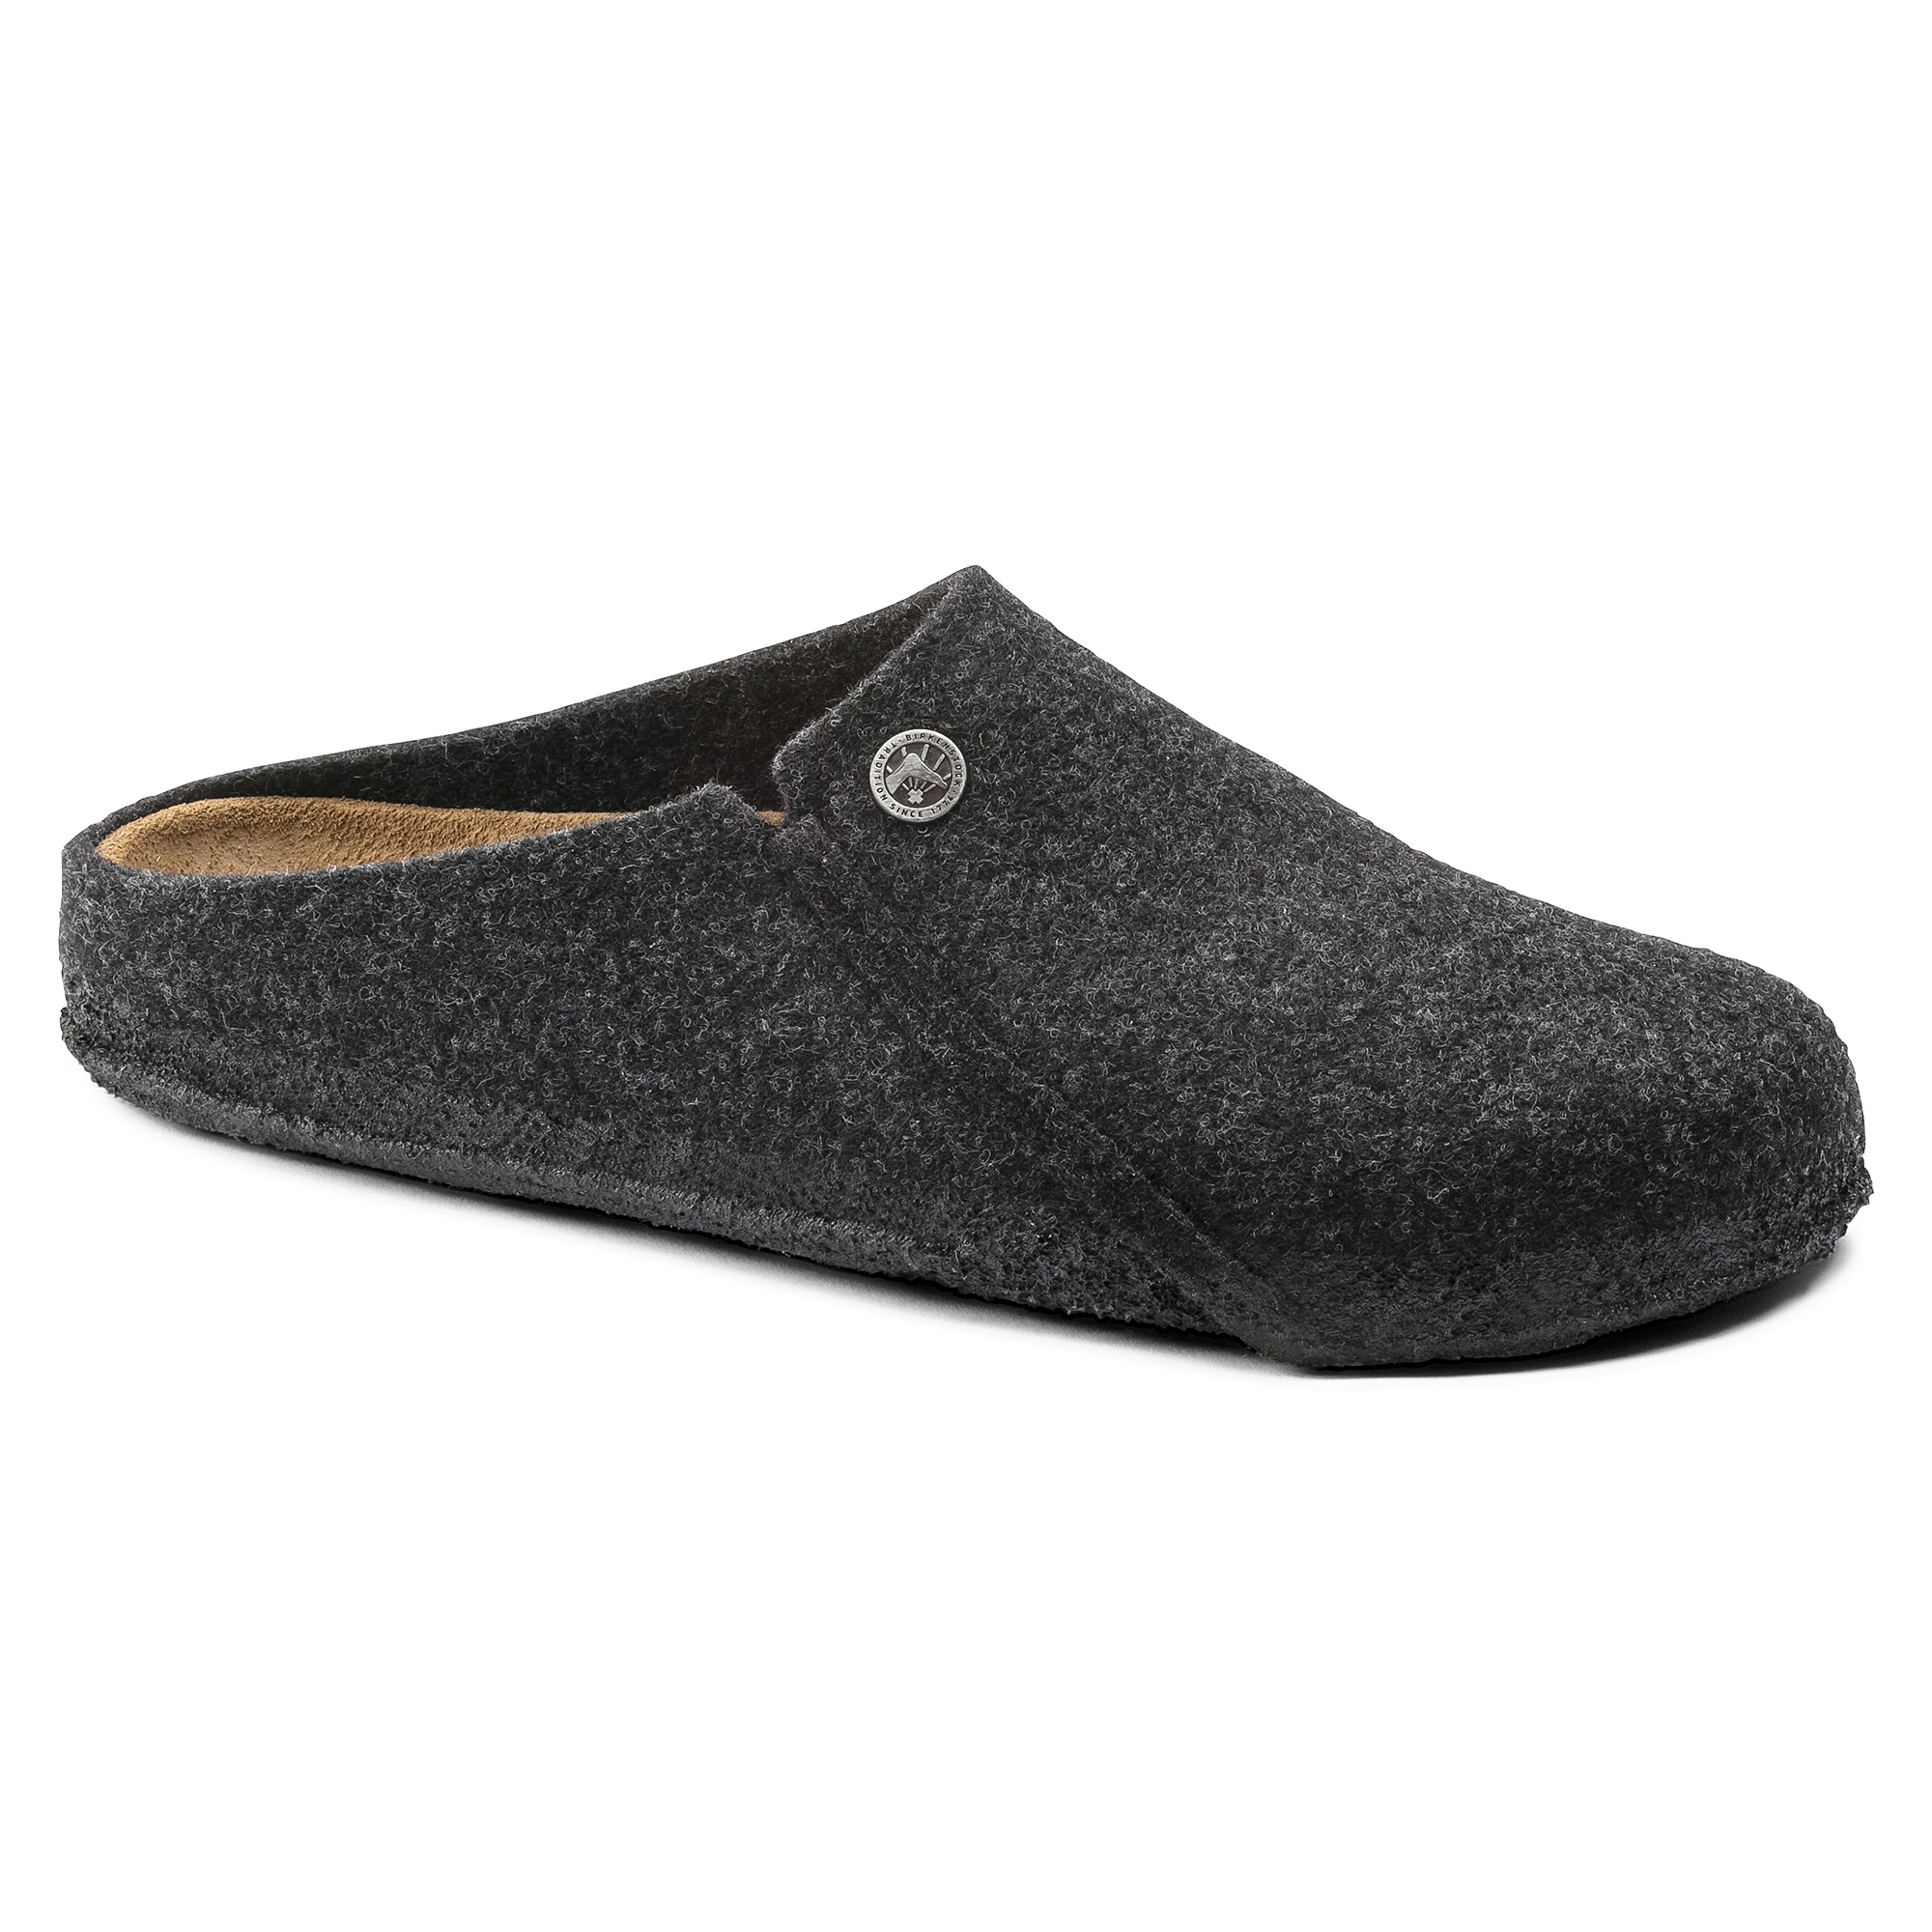 birkenstock felt slippers